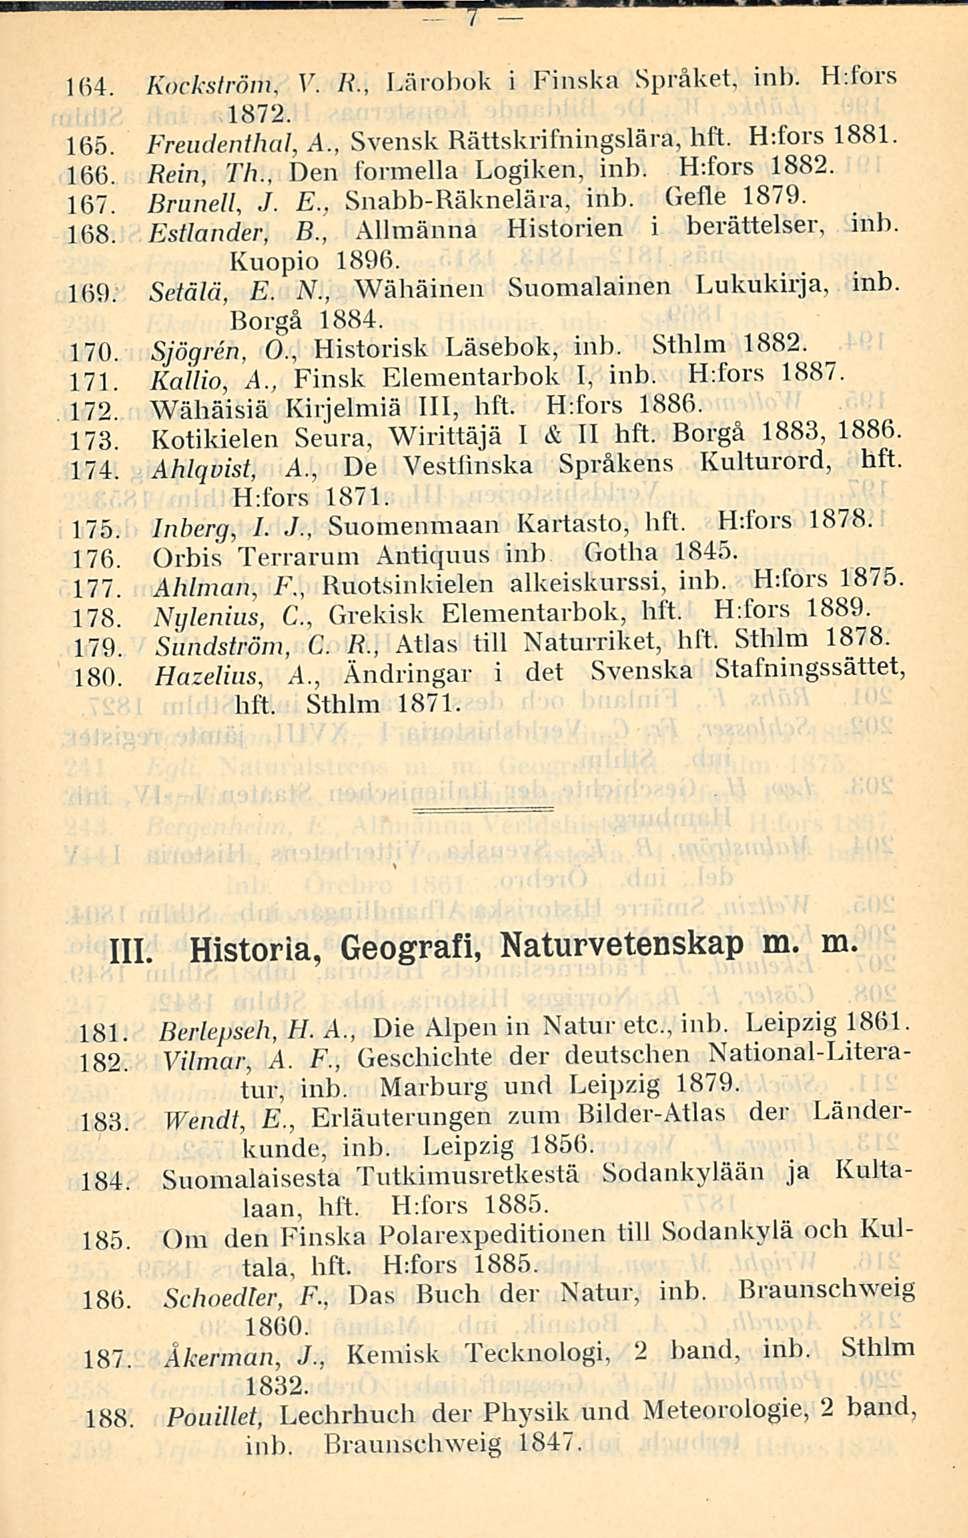 7 164. Kockström, V. /?., Lärobok i Finska Språket, inb. H:fors 1872. 165. Freudenthal, A., Svensk Bättskrifningslära, hft. H:fors 1881. 166. Rein, Th., Den formella Logiken, inb. H:fors 1882. 167.